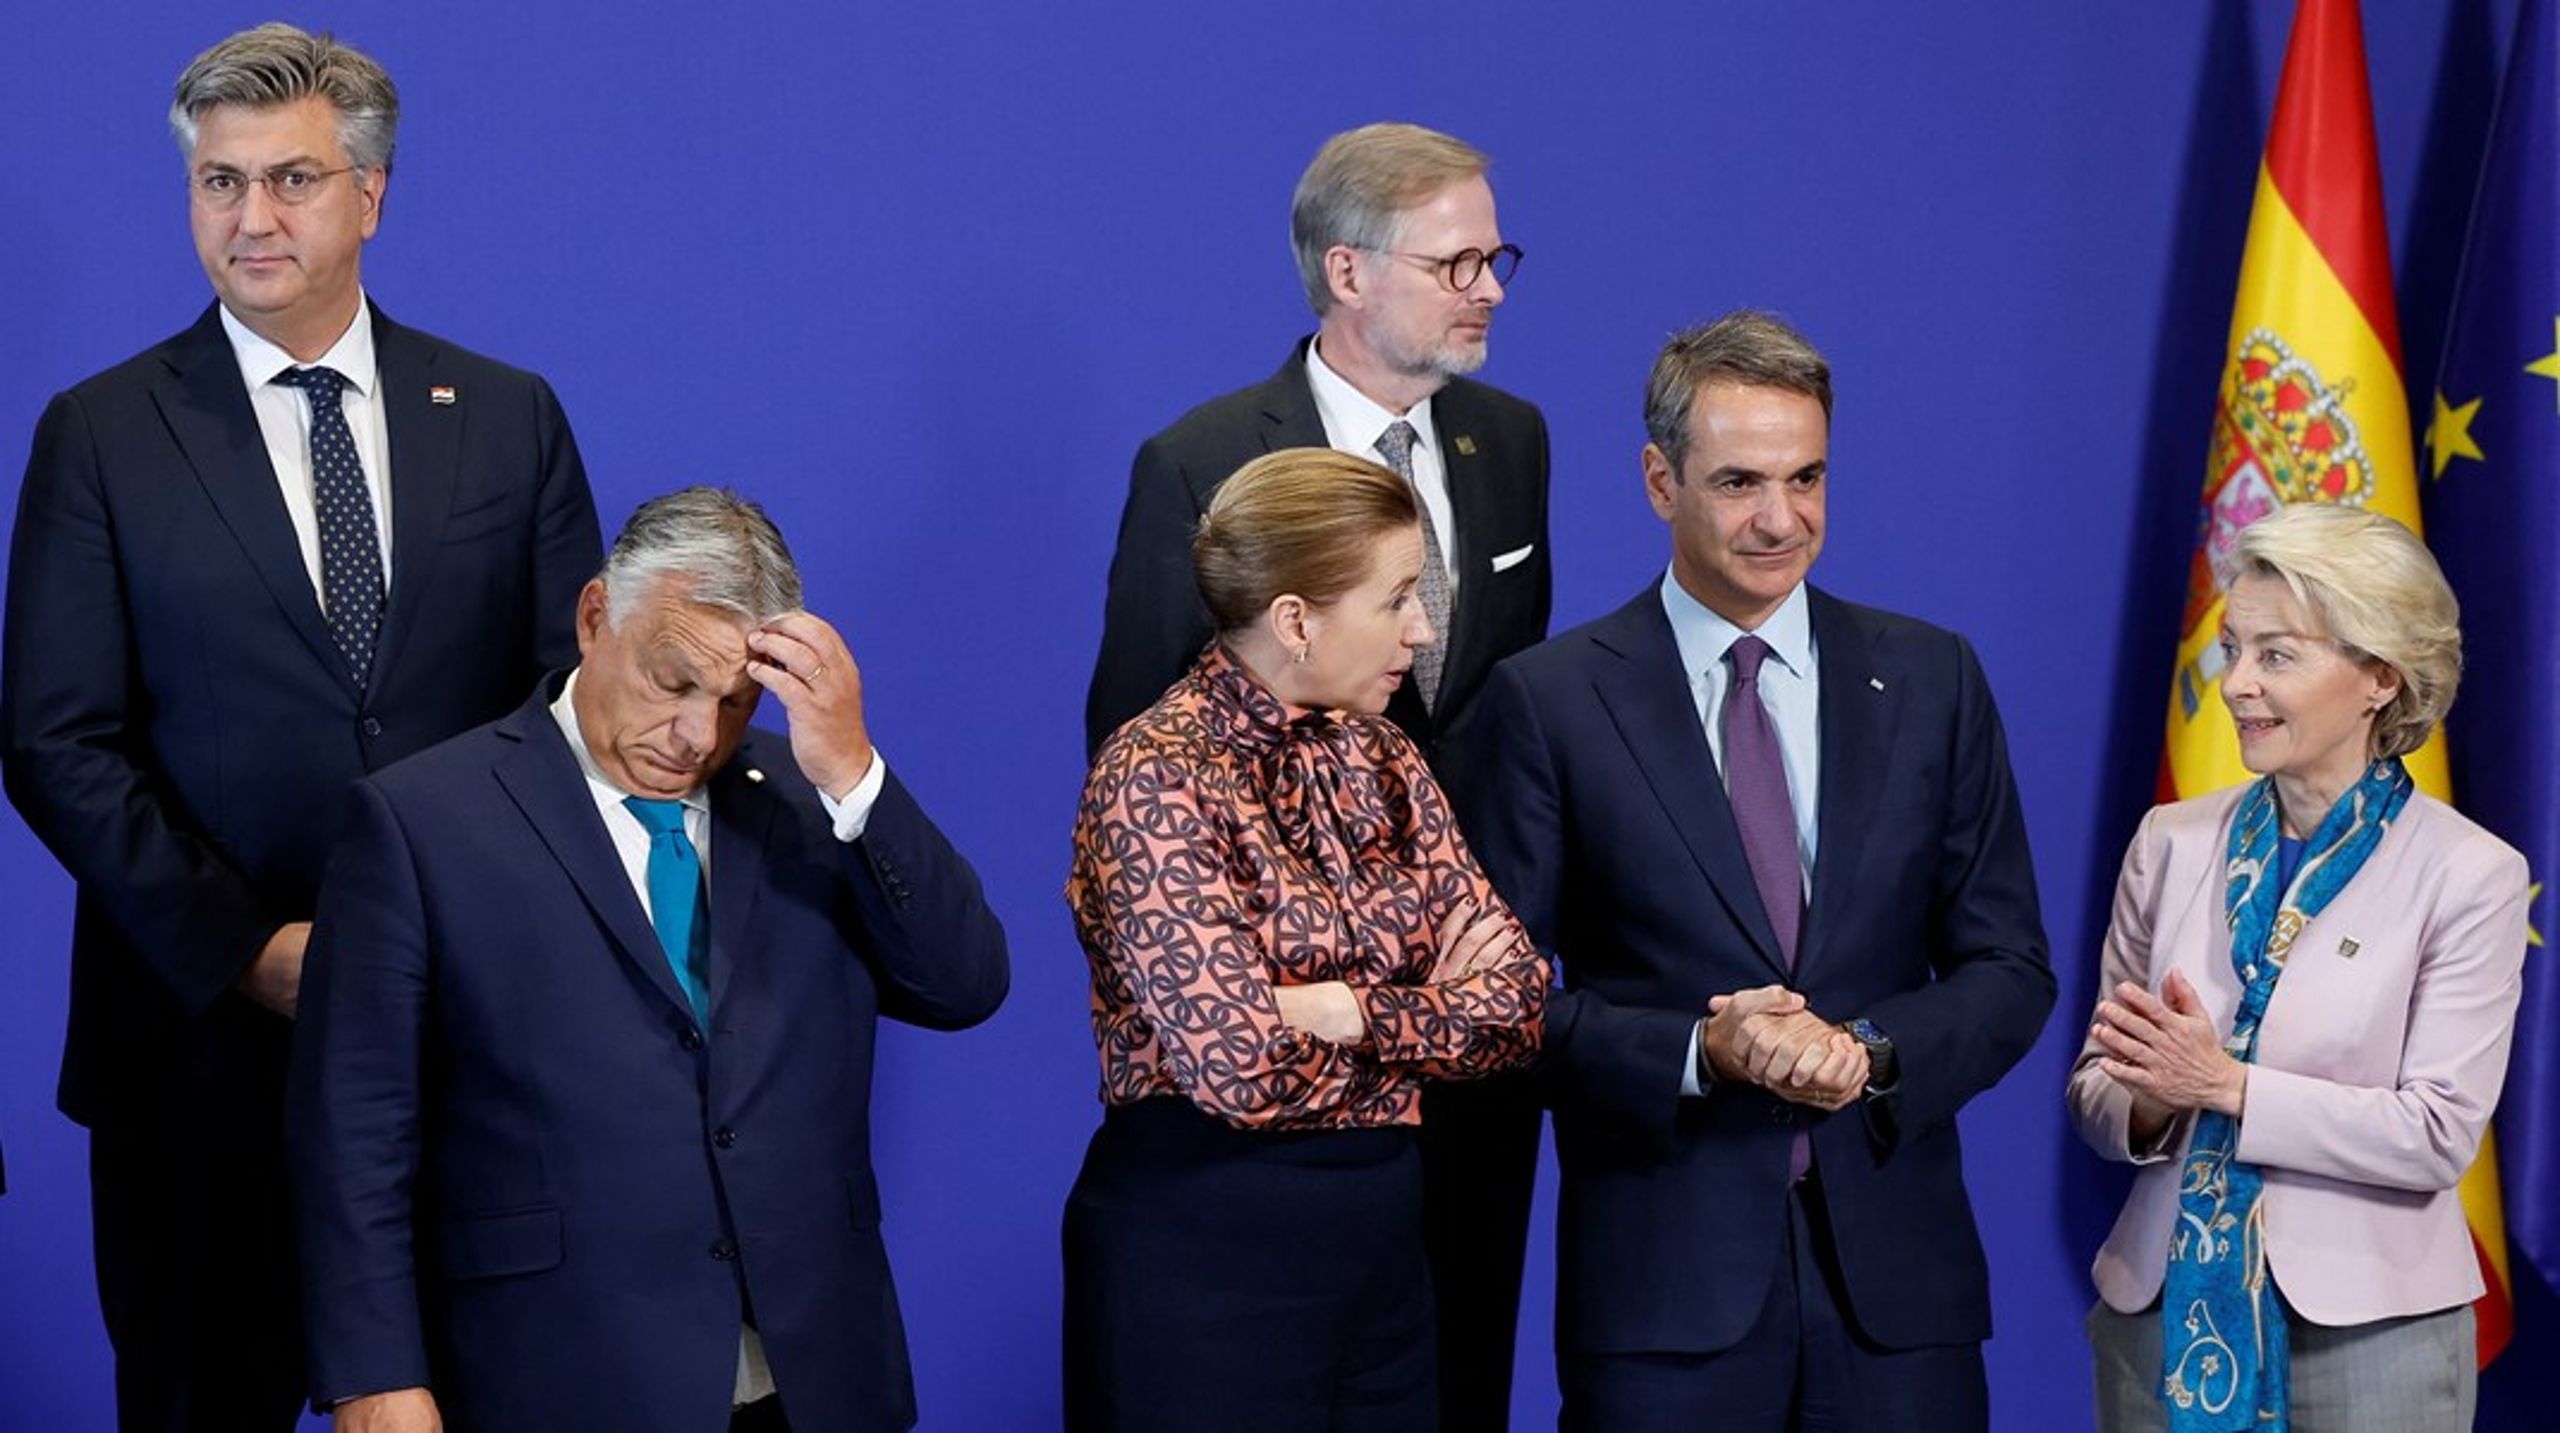 Var det tilsiktet av Danmarks statsminister Mette Frederiksen å vende Ungarns statsminister Viktor Orbán ryggen?